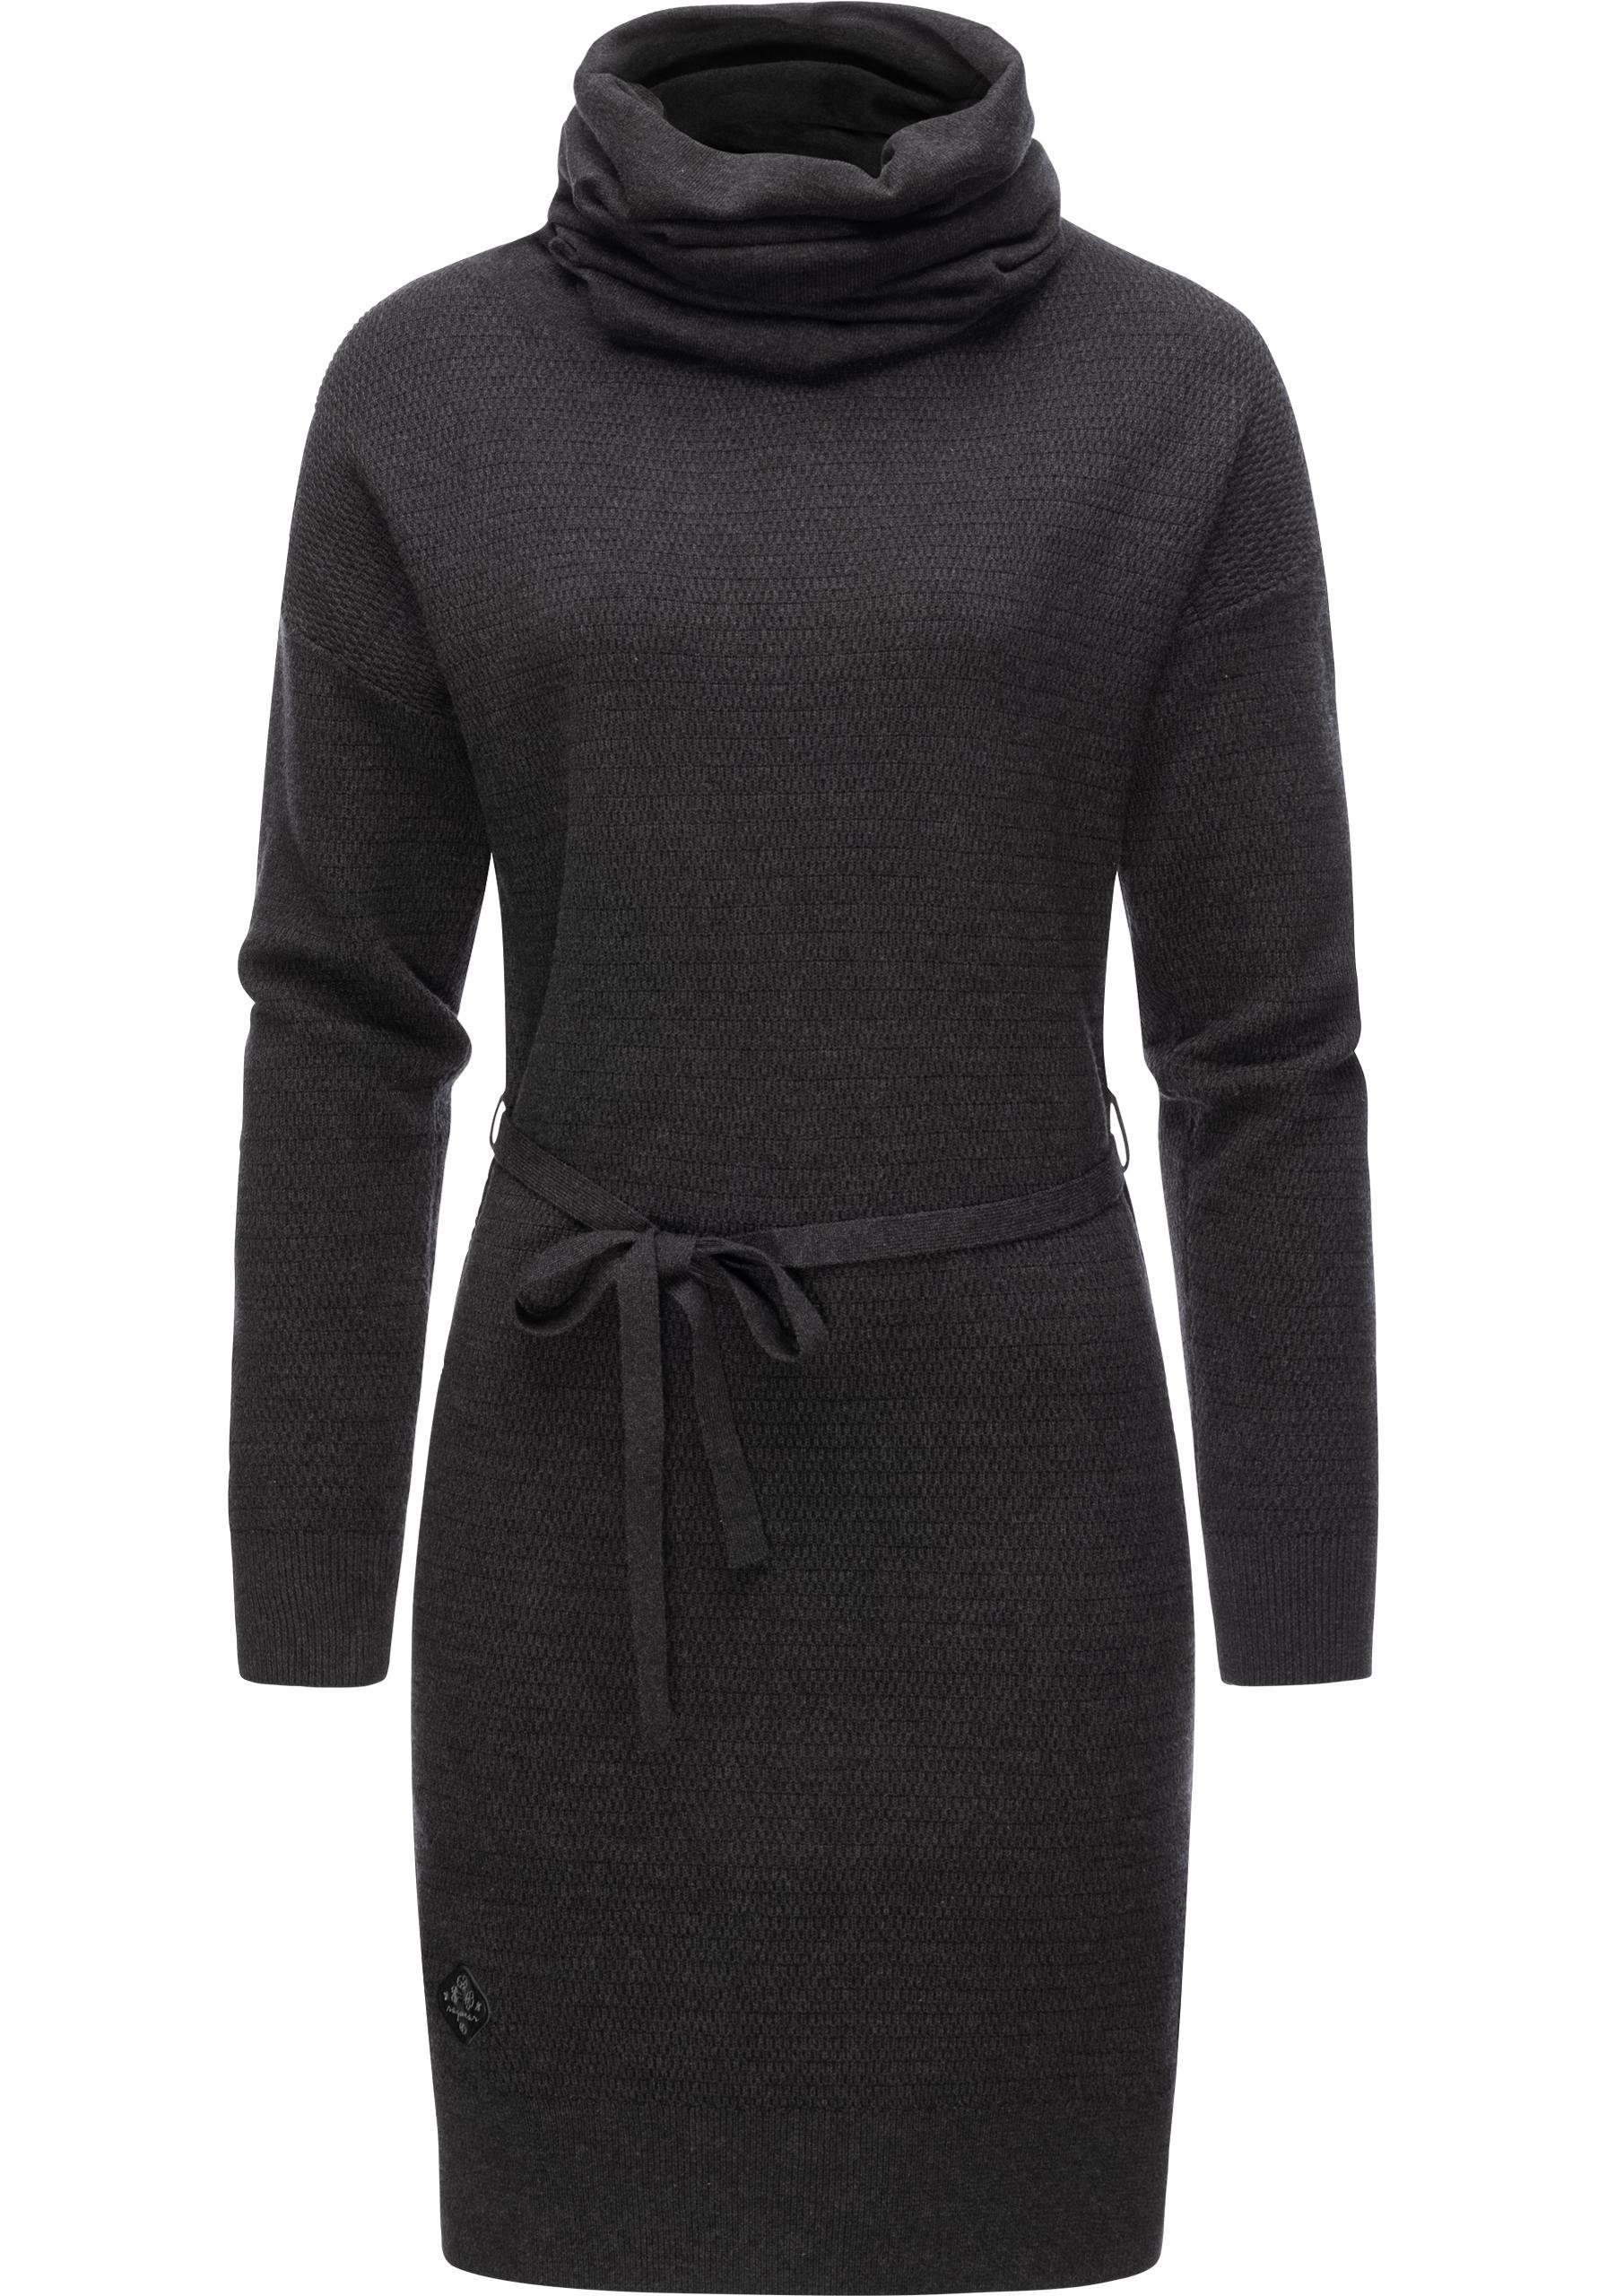 Ragwear Sweatkleid »Babett Dress Intl.« warmes Winterkleid mit breitem  Rollkragen online kaufen | OTTO